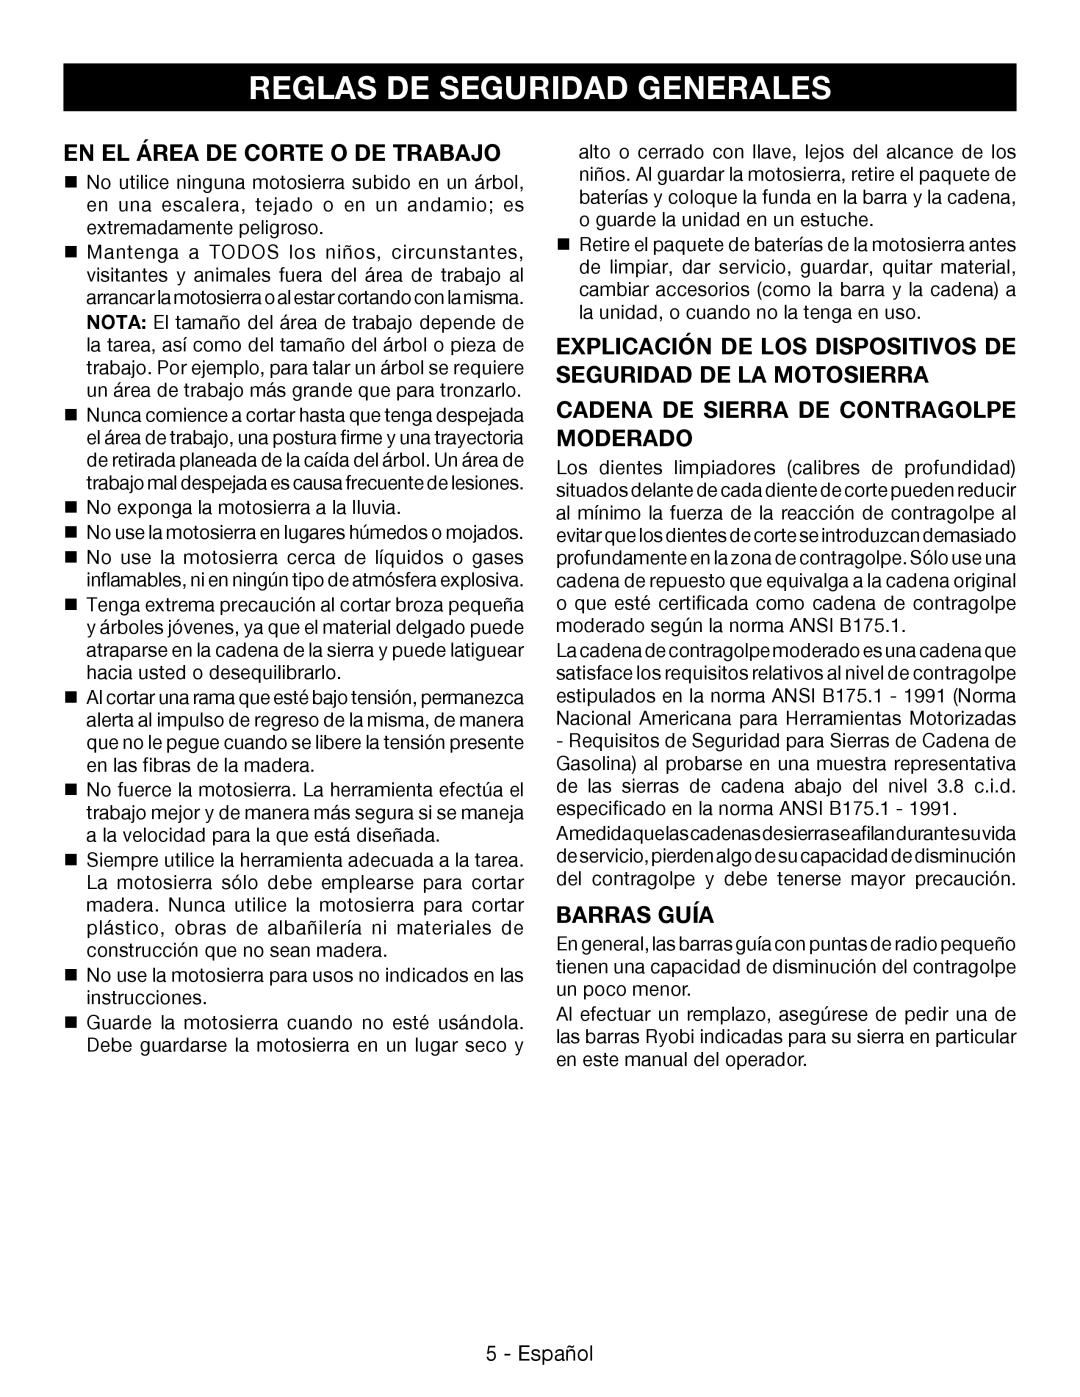 Ryobi P545 En El Área De Corte O De Trabajo, Cadena De Sierra De Contragolpe Moderado, Barras Guía, Español 